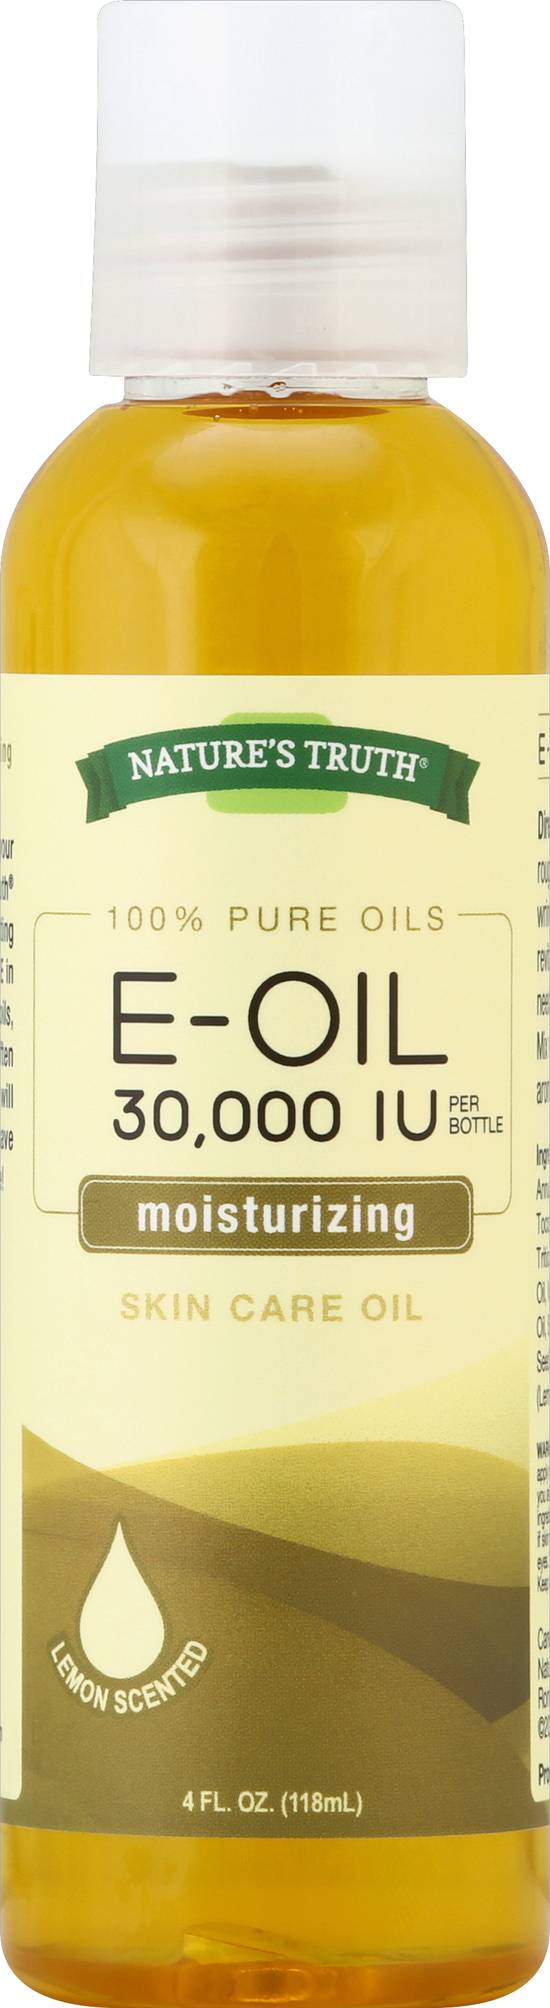 Nature's Truth Moisturizing Lemon Scented E-Oil